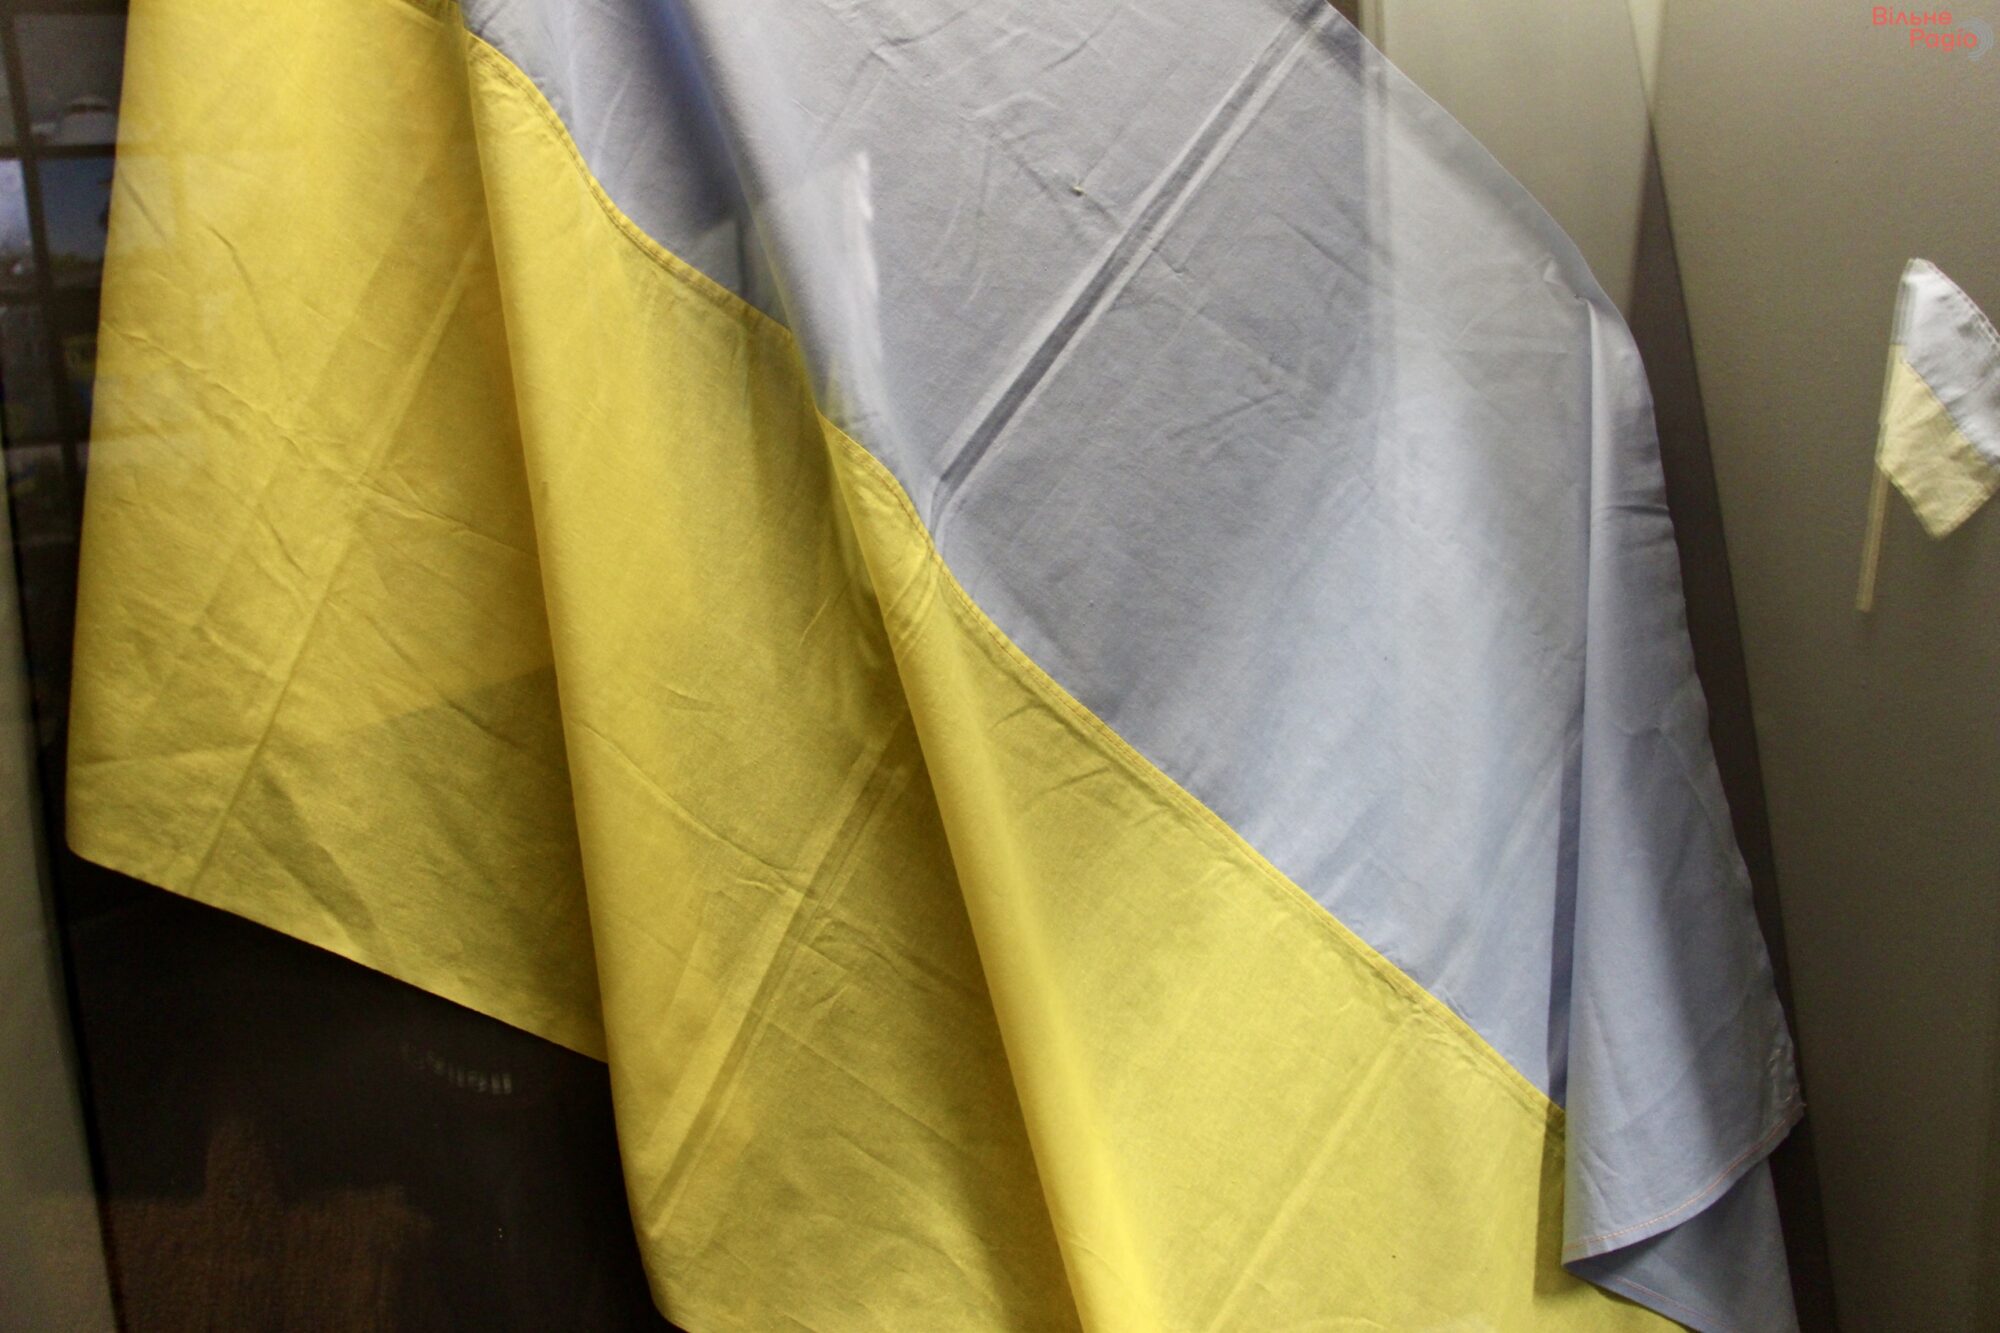 “Прапори Незалежності”: фотодобірка державних стягів, які назавжди залишаться частиною української історії 8